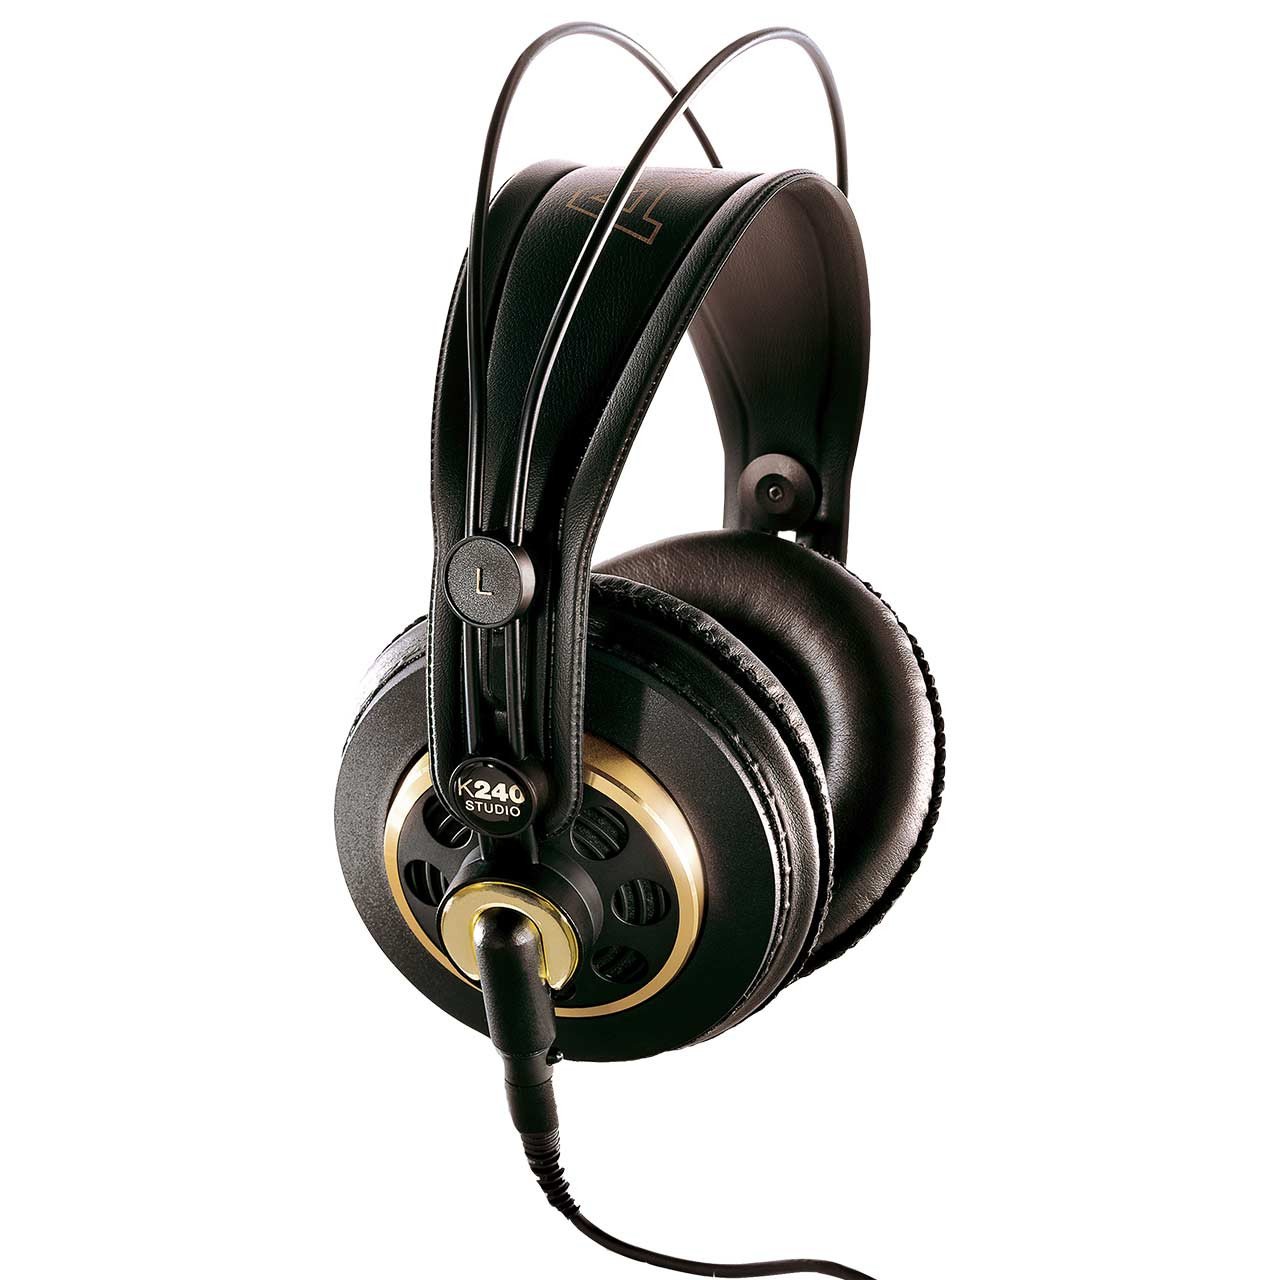 Open Headphones - AKG K240 Studio Professional Over-Ear Semi-Open Headphones